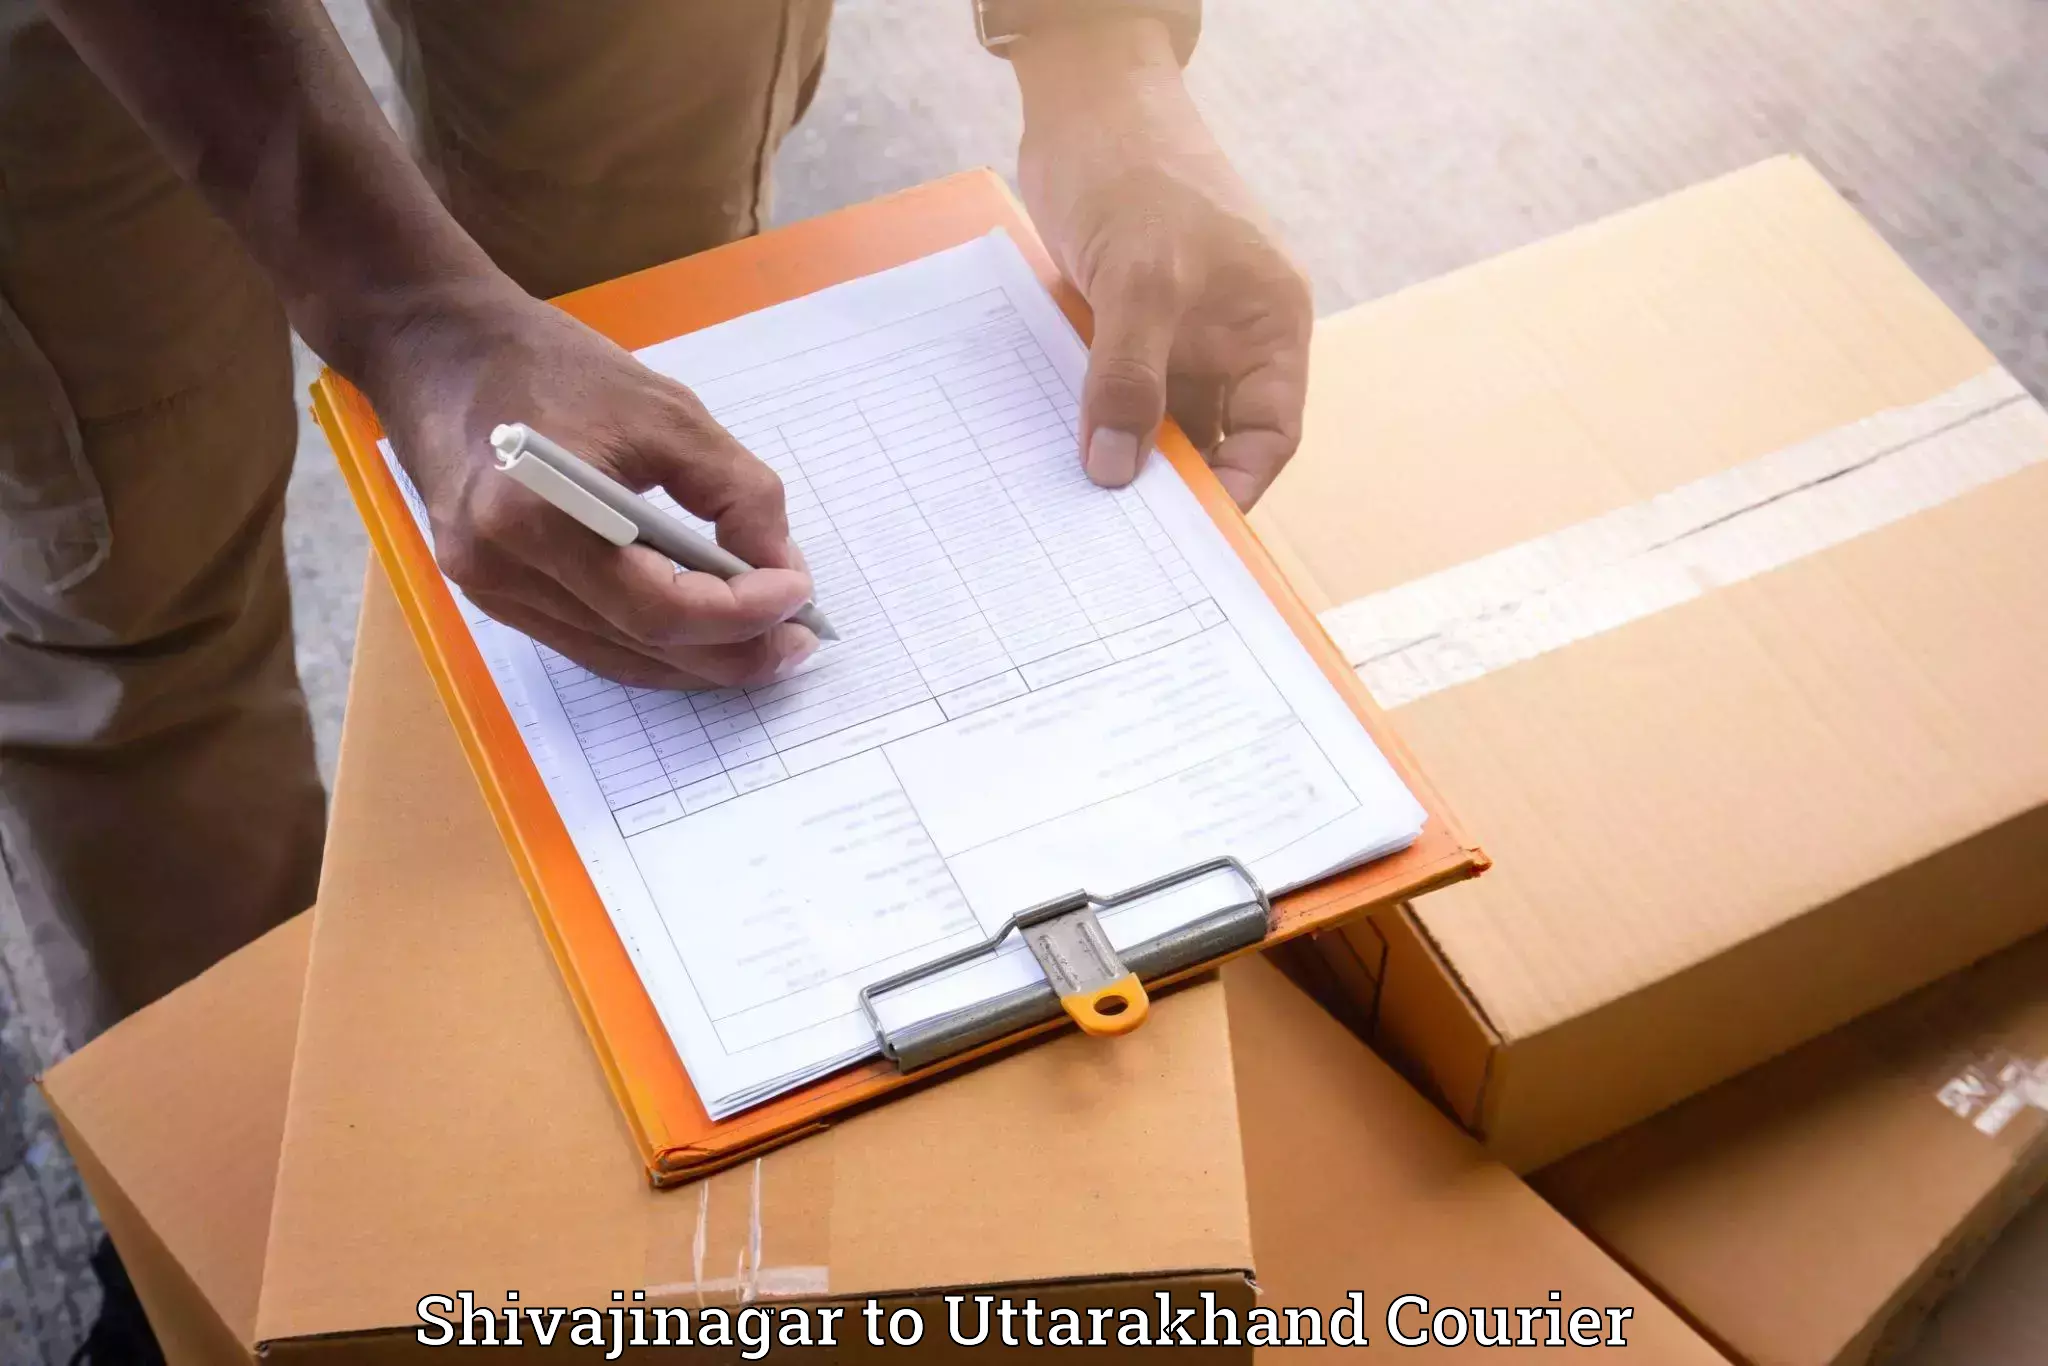 Furniture movers and packers Shivajinagar to Uttarakhand